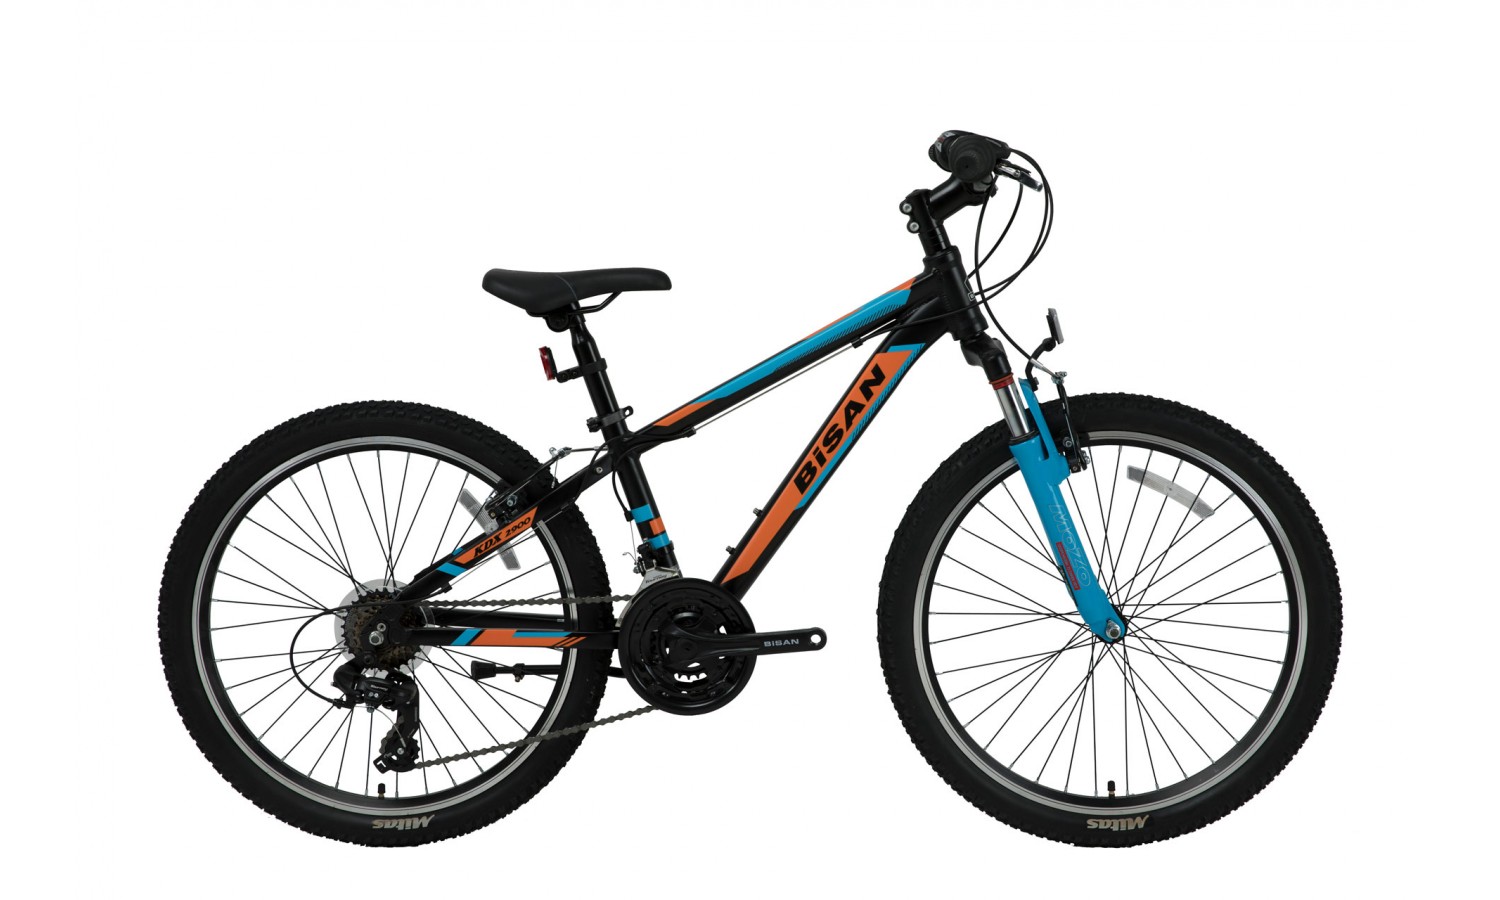 Bisan Kdx 2900 24 Jant V Fren Çocuk Bisikleti (Siyah-Turuncu Mavi)